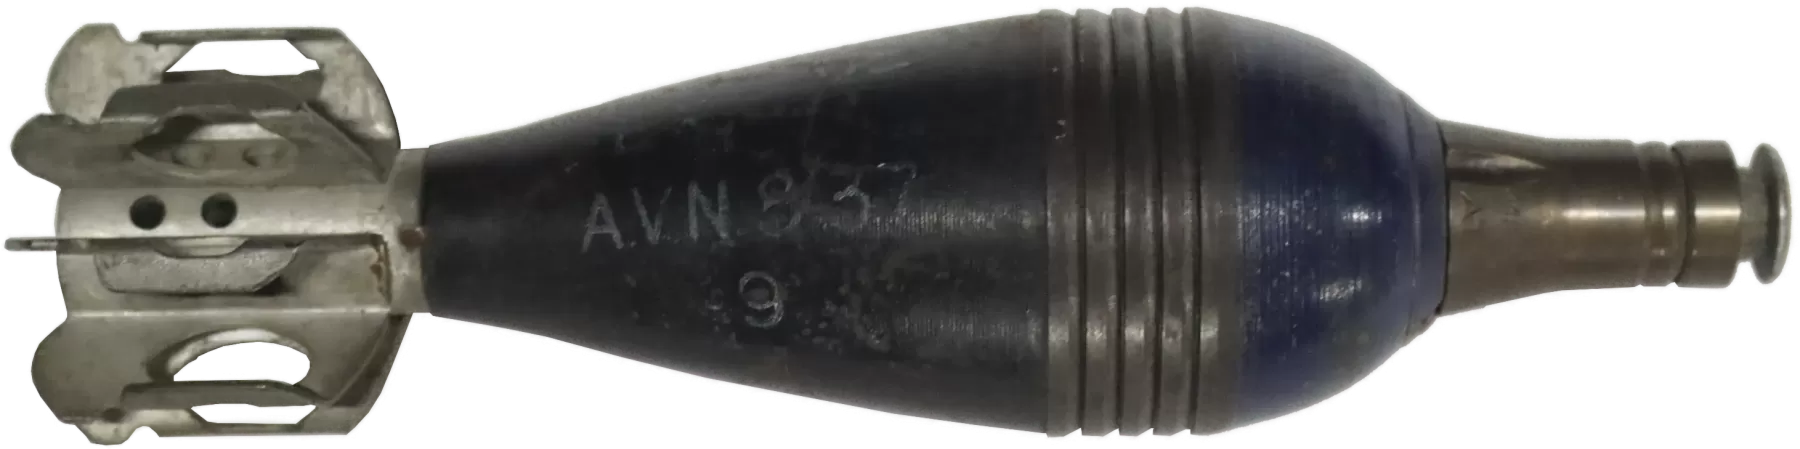 Ligne Maginot - Munition pour mortier de 60 mm FA mle 1935 (60 FA 35) - Projectile de 60 mm FA Mle 1935 d’exercice